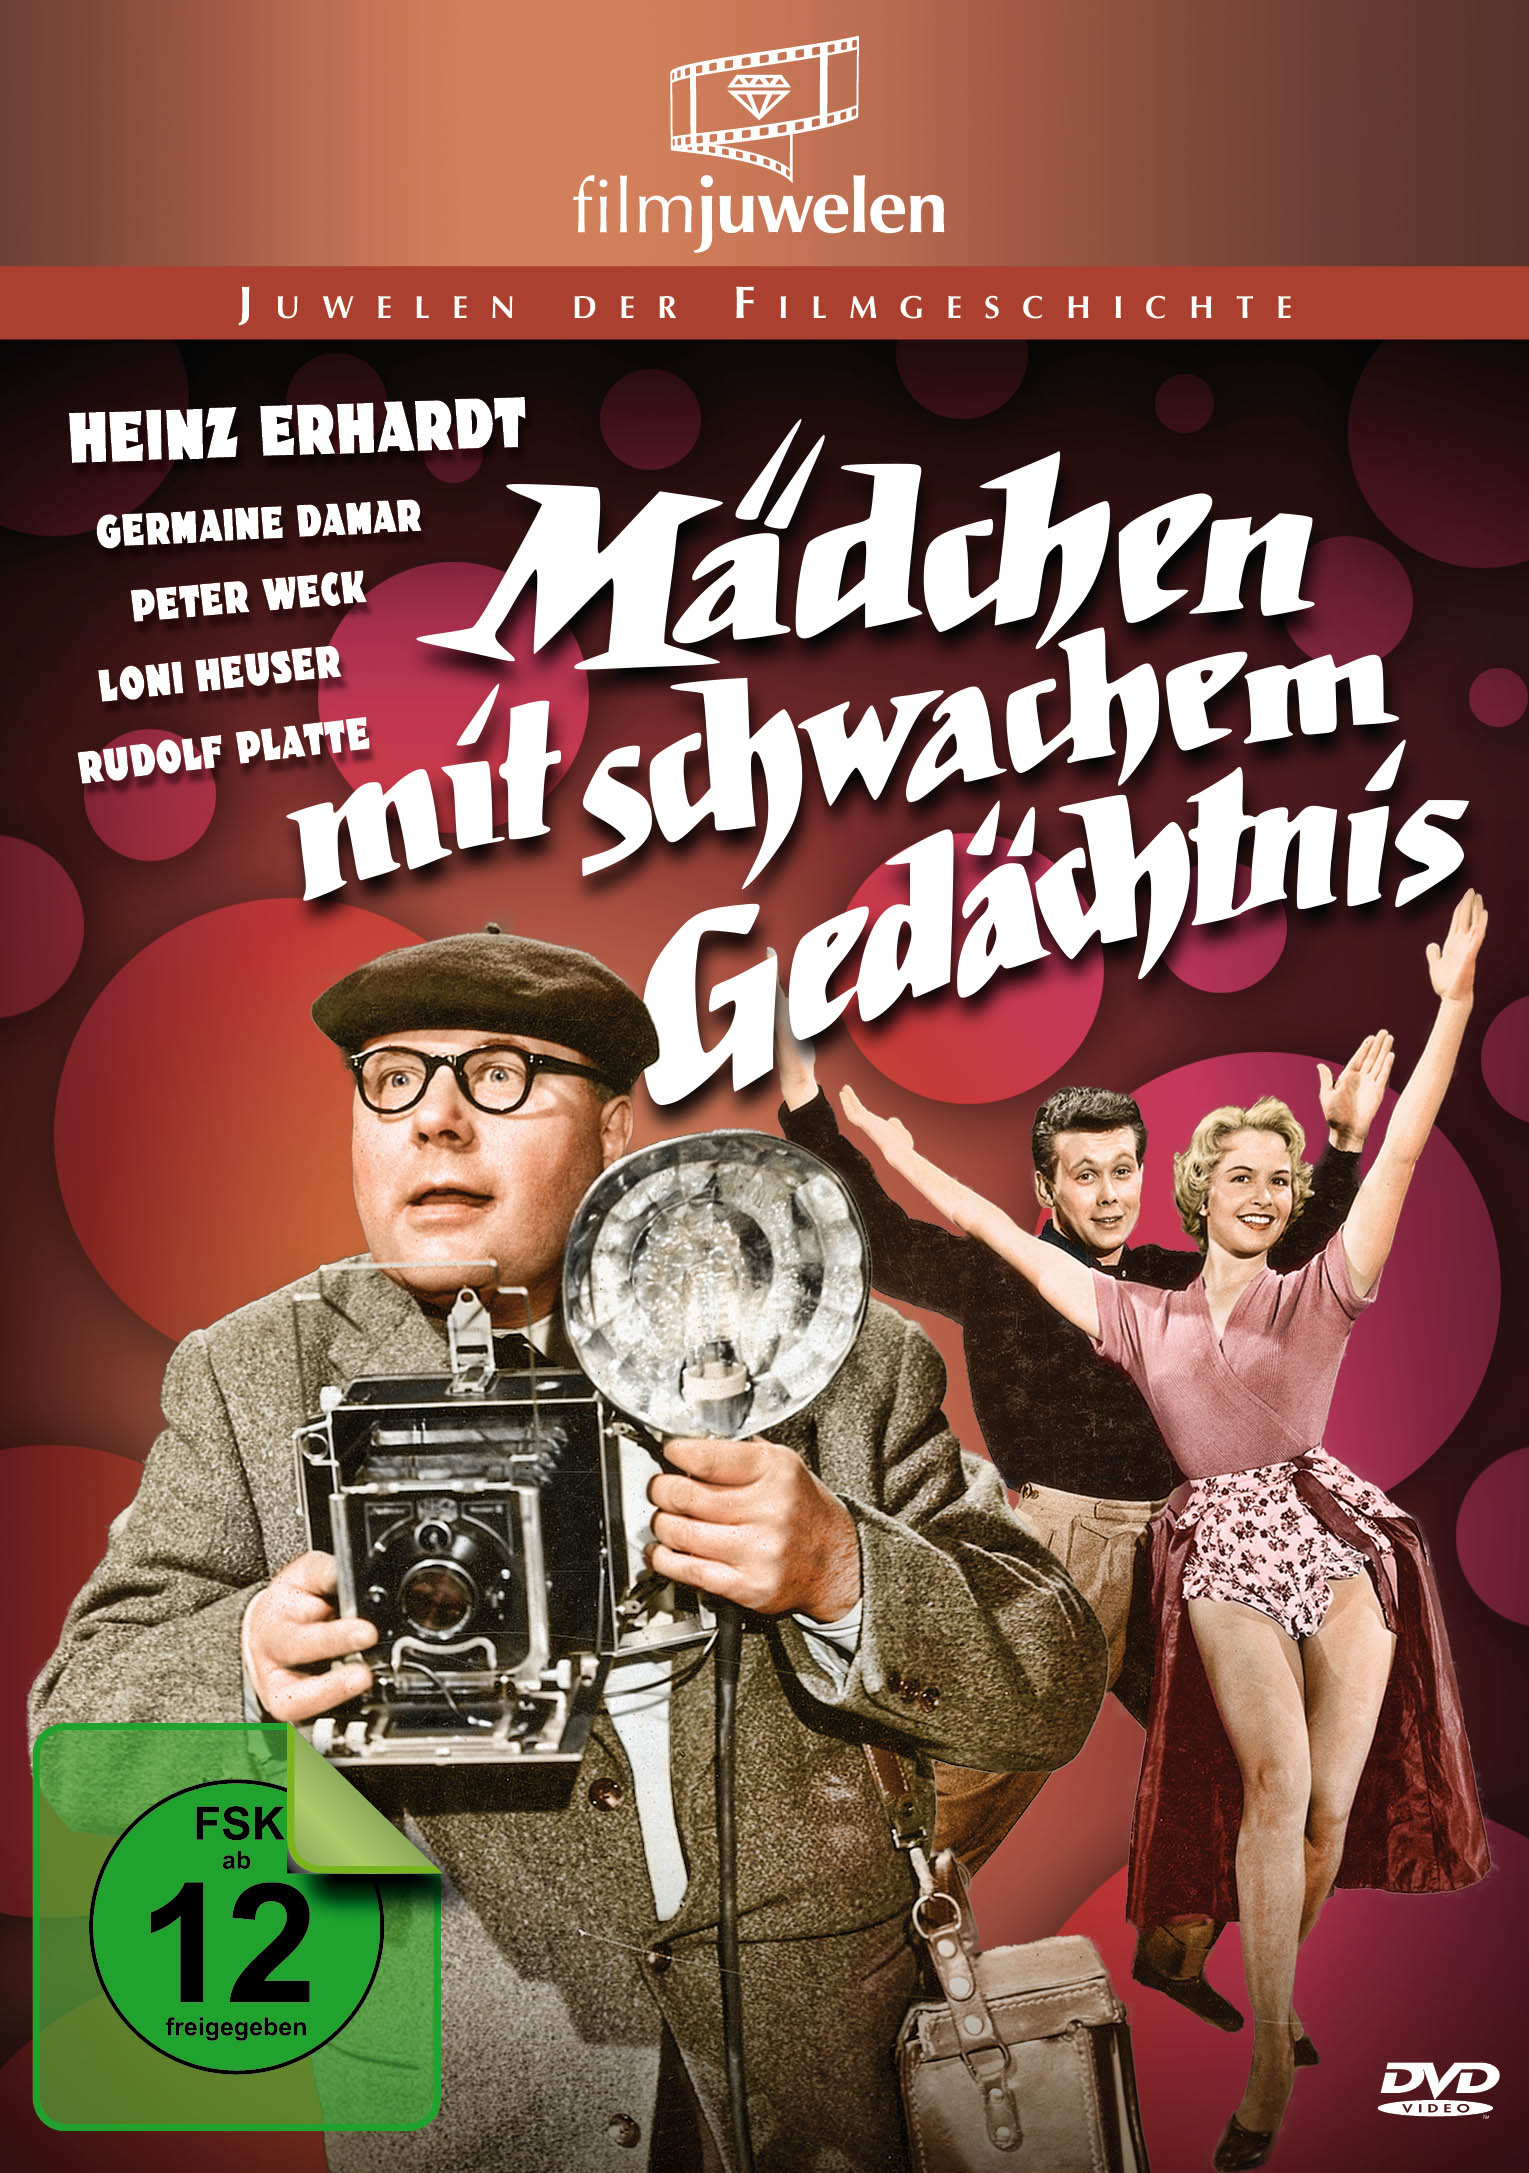 Heinz Erhardt - DVD mit Gedächtnis schwachem Mädchen